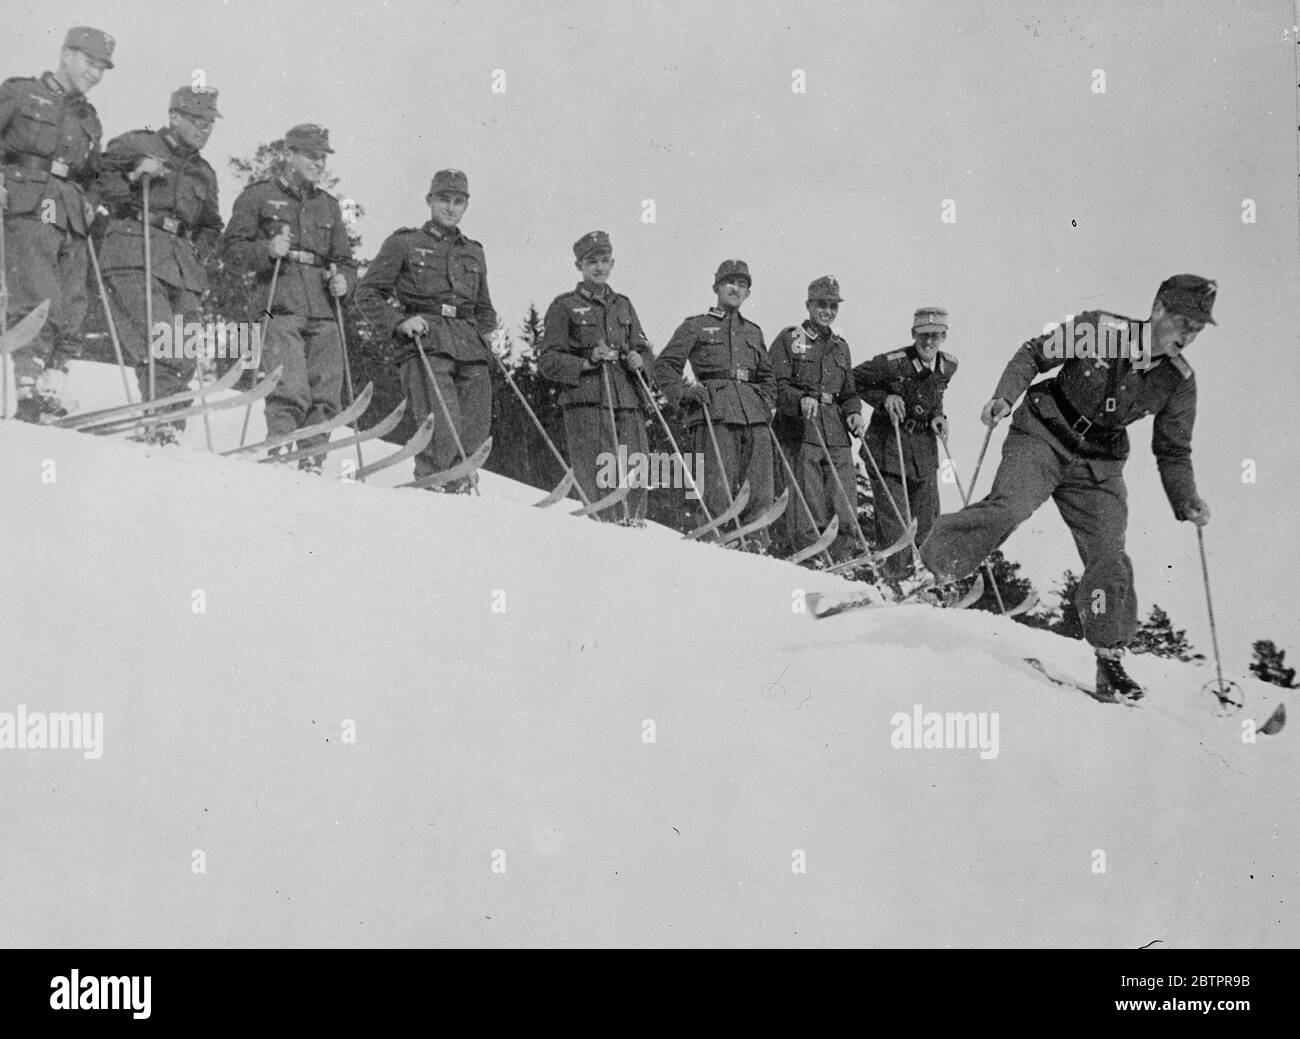 Comando perfetto!. La squadra di sci del 19° Reggimento montano dell'esercito tedesco, che guarda una dimostrazione del leader Sommer durante l'allenamento, nei pressi di Mitterwald per i Campionati di sci dell'esercito tedesco che si svolgono il mese prossimo. 18 gennaio 1938 Foto Stock